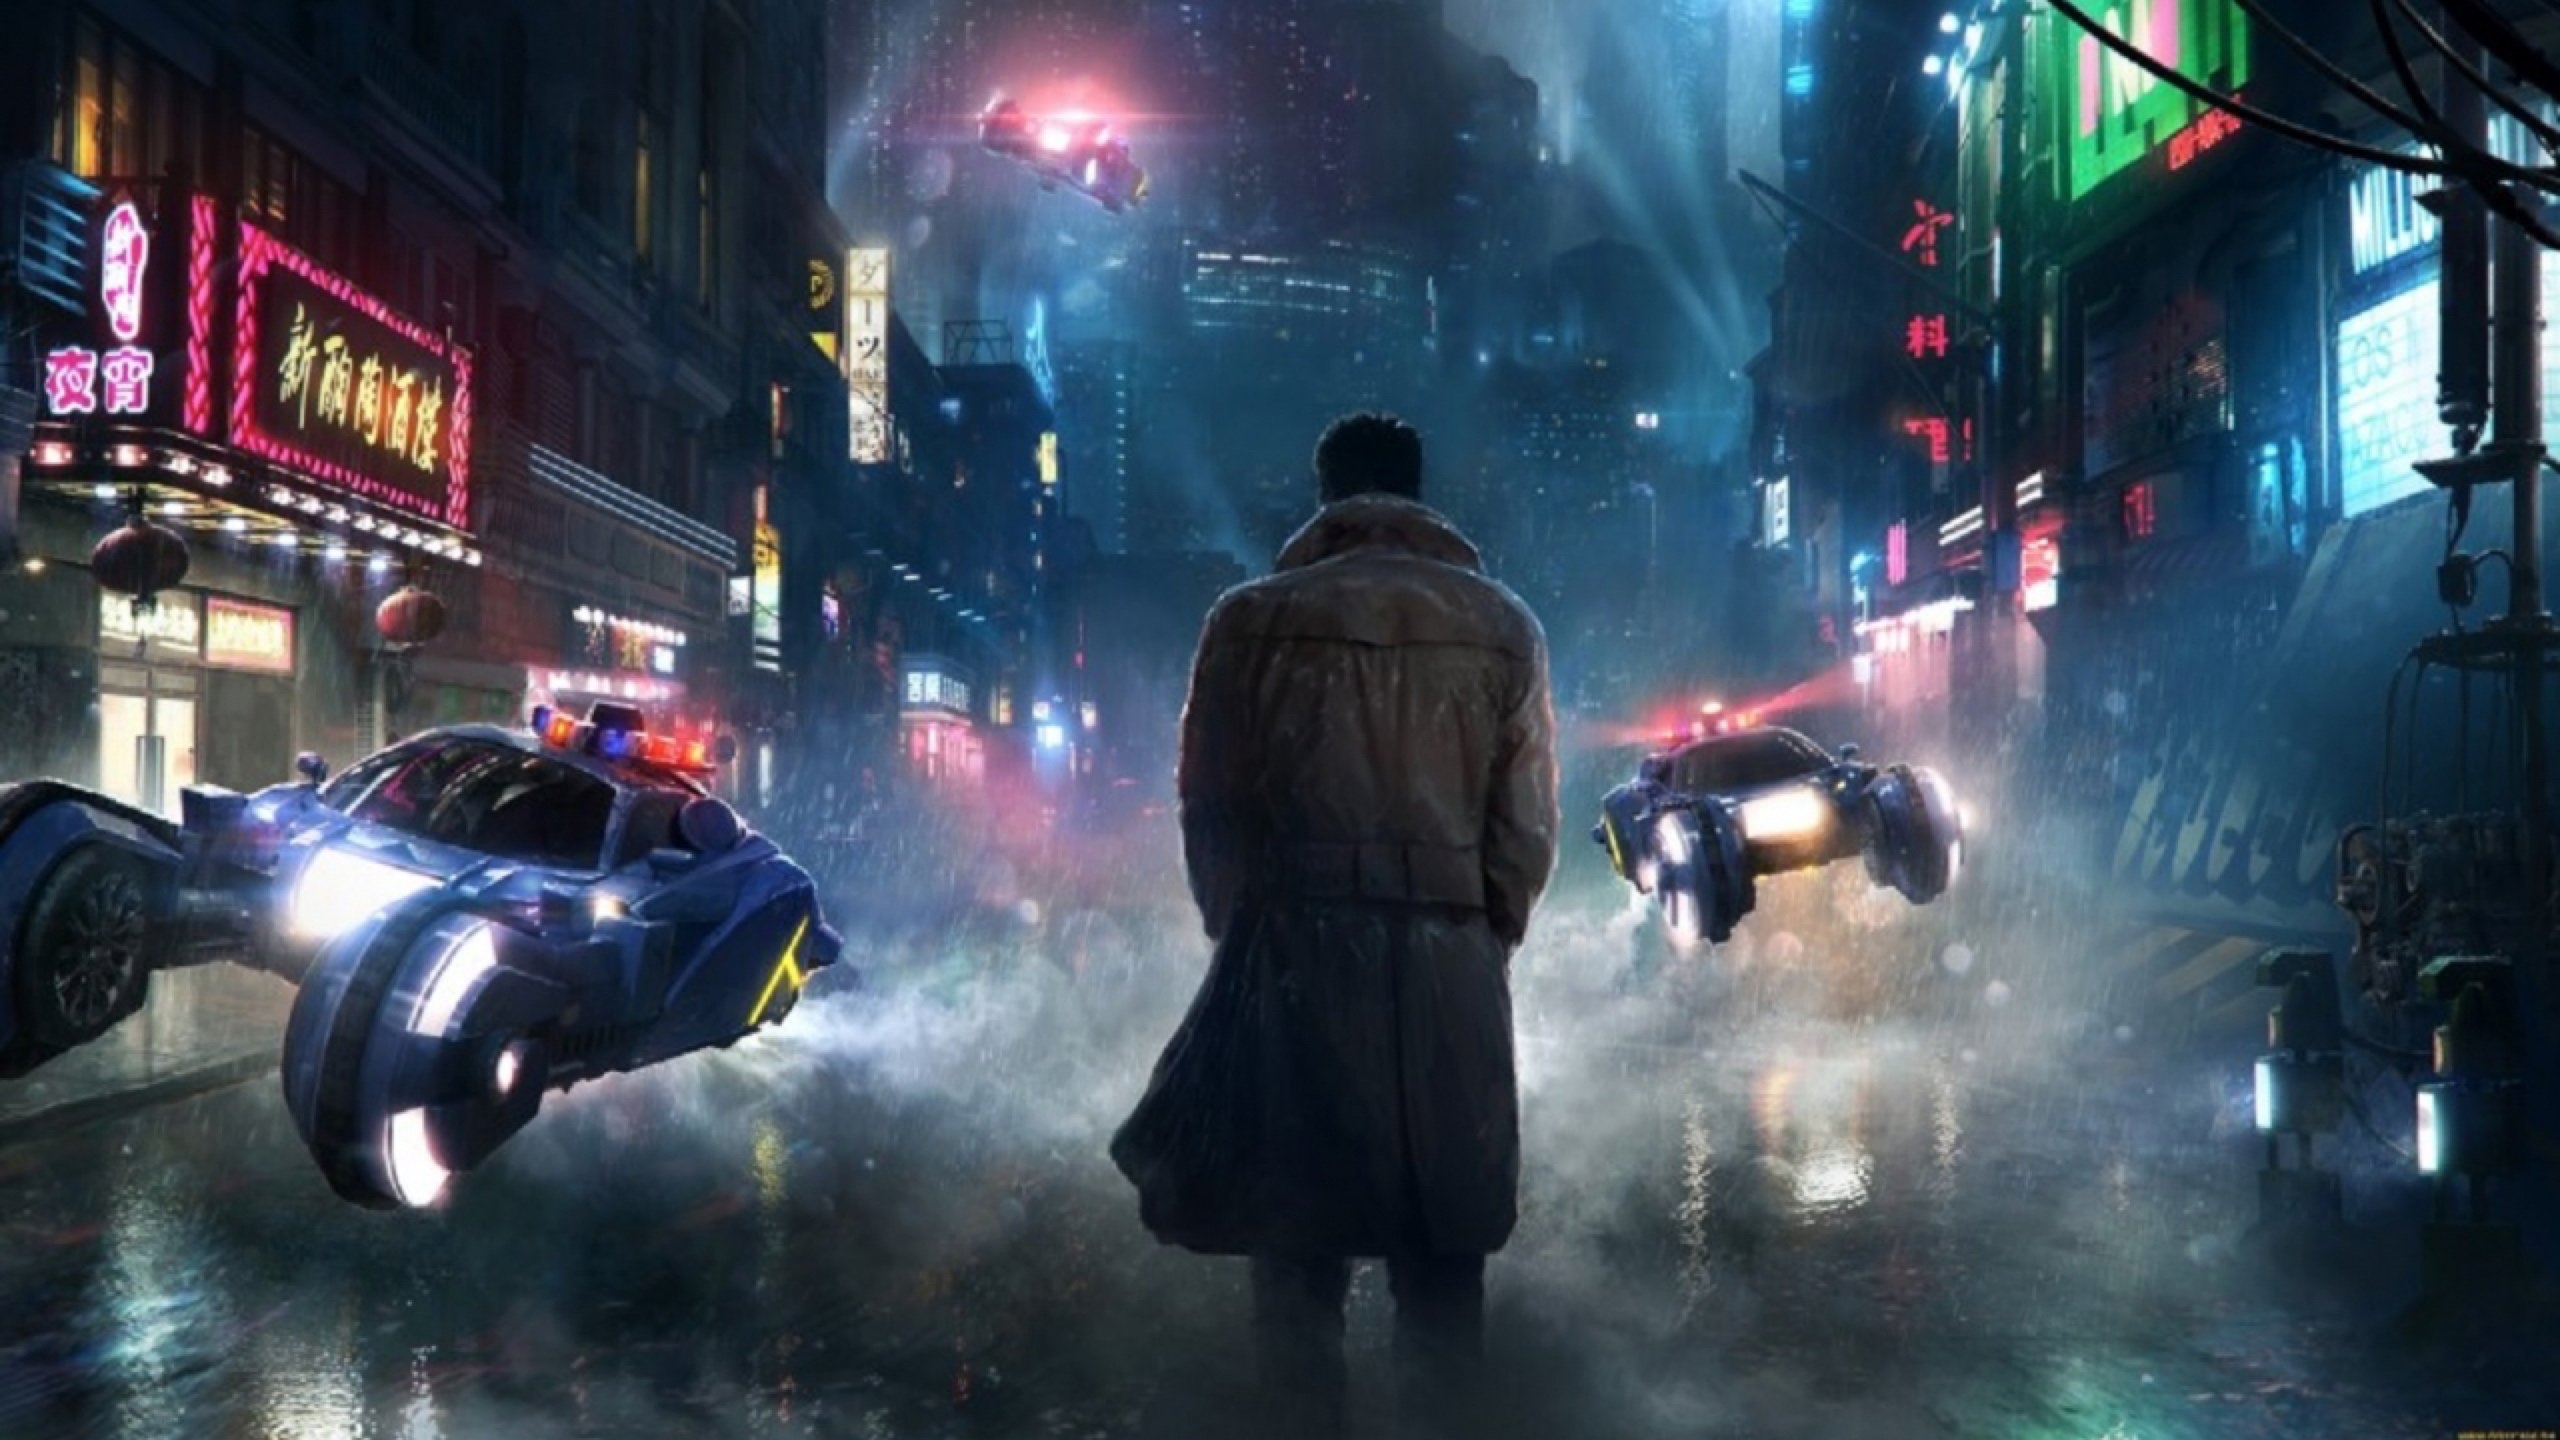 Ανατριχίλα: Αυτό είναι το πρώτο trailer για το σίκουελ του Blade Runner!